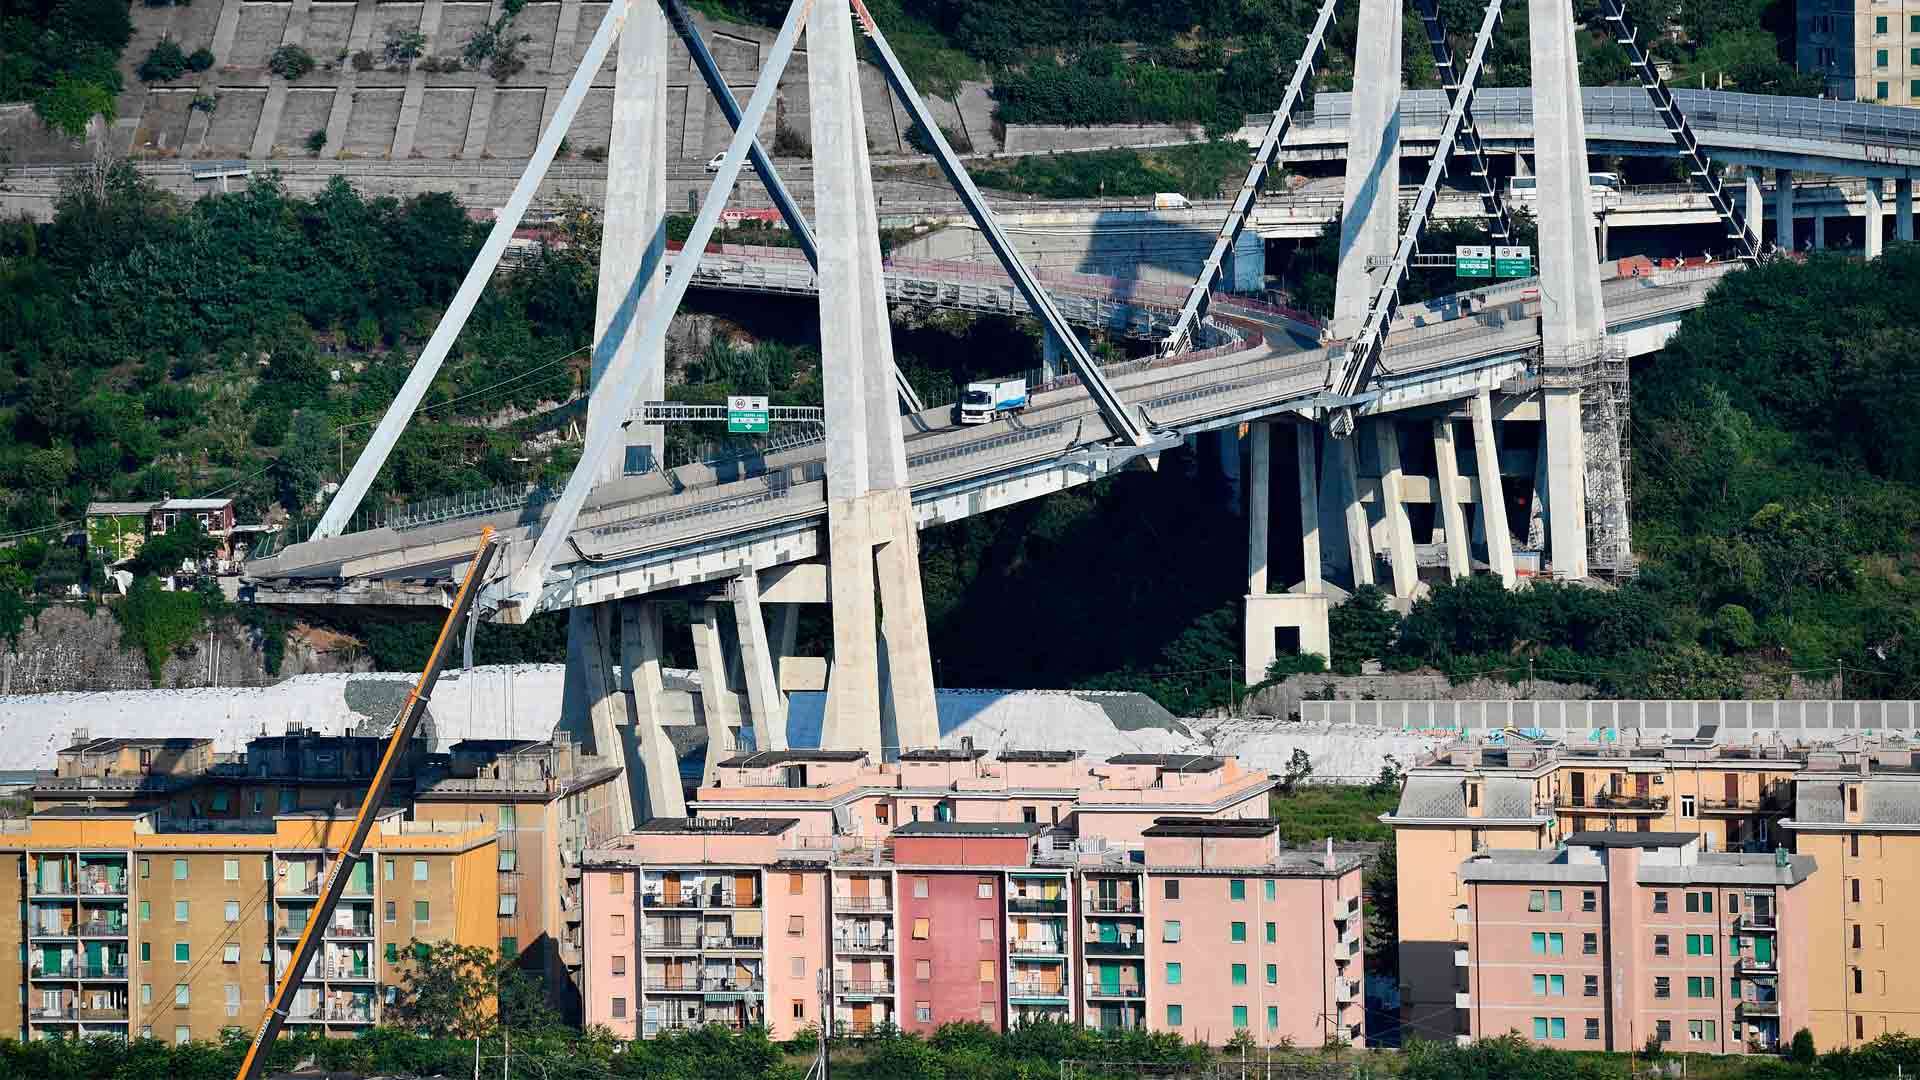 La comisión que investiga el derrumbe en Génova aconseja demoler el puente